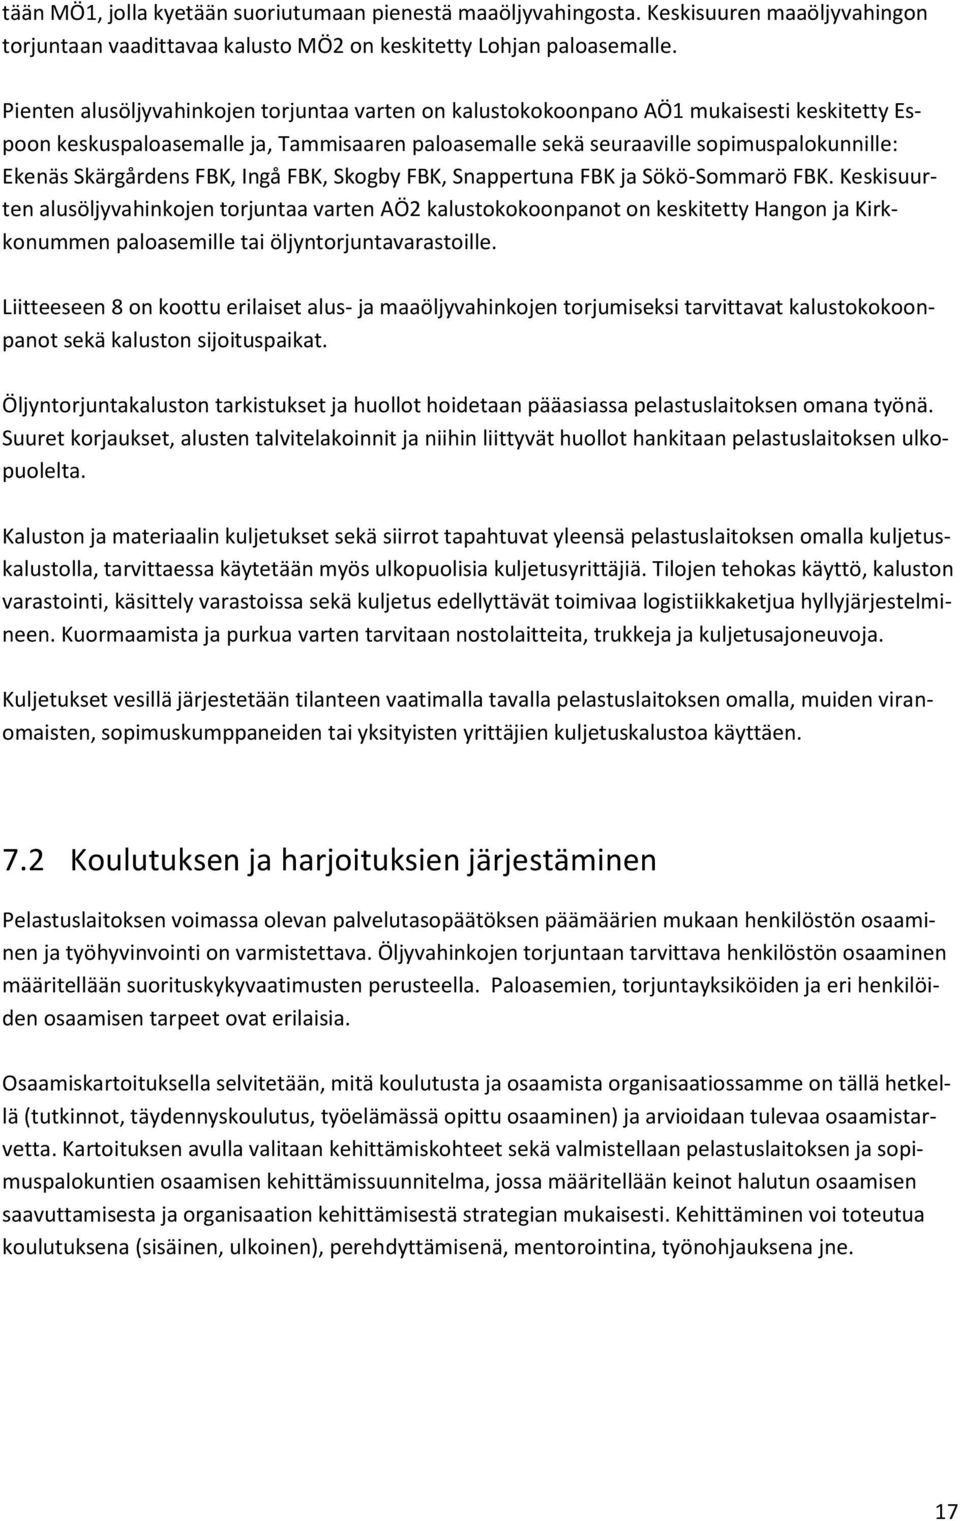 Skärgårdens FBK, Ingå FBK, Skogby FBK, Snappertuna FBK ja Sökö-Sommarö FBK.